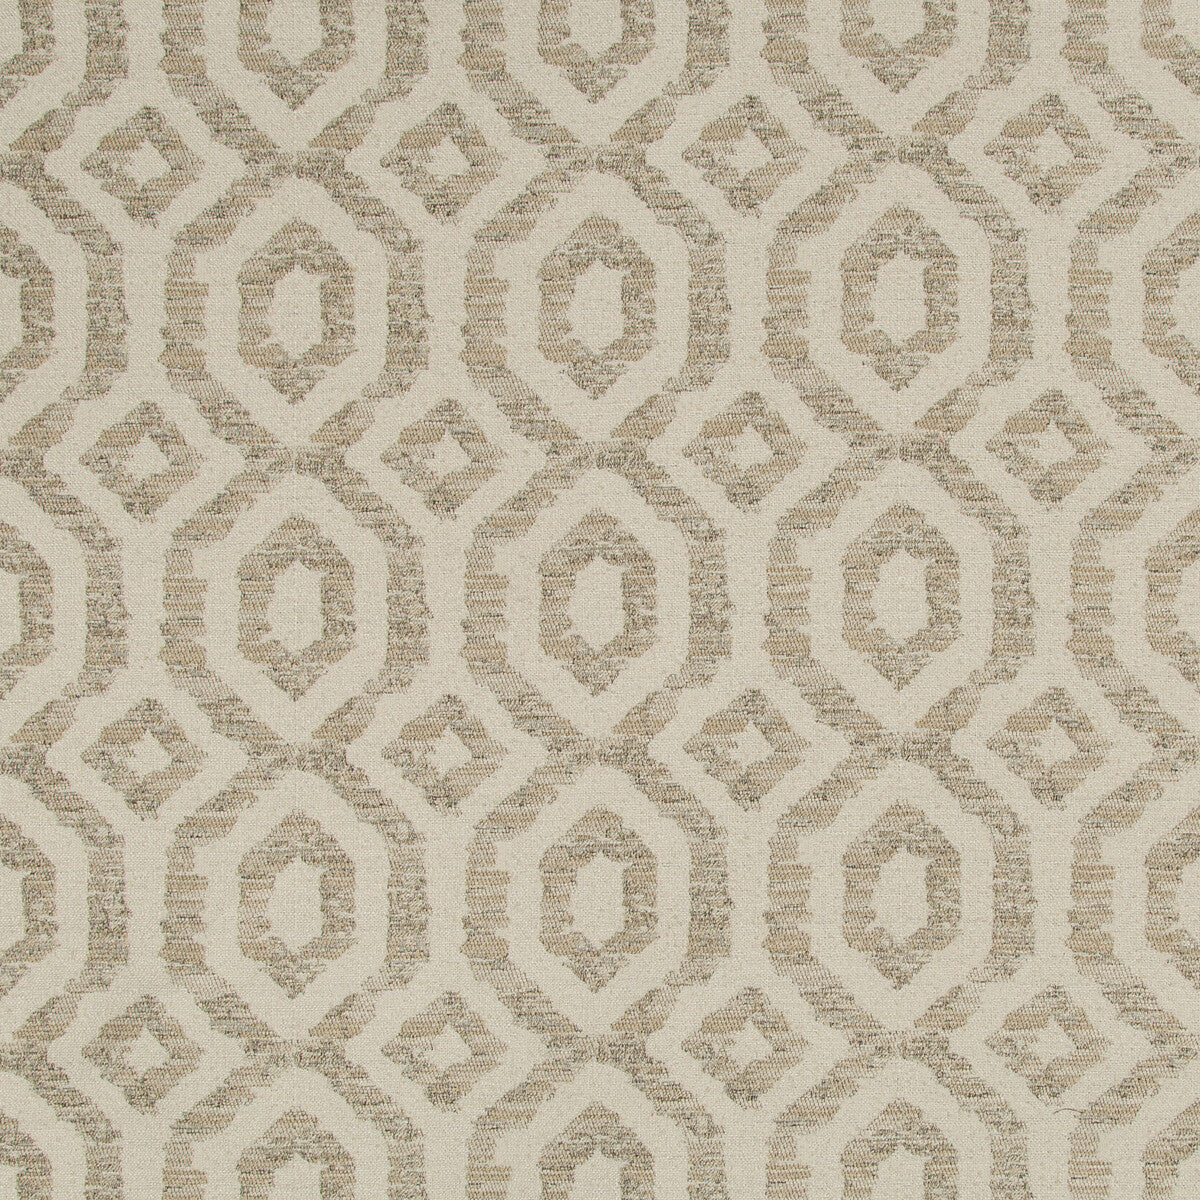 Kravet Design fabric in 35685-16 color - pattern 35685.16.0 - by Kravet Design